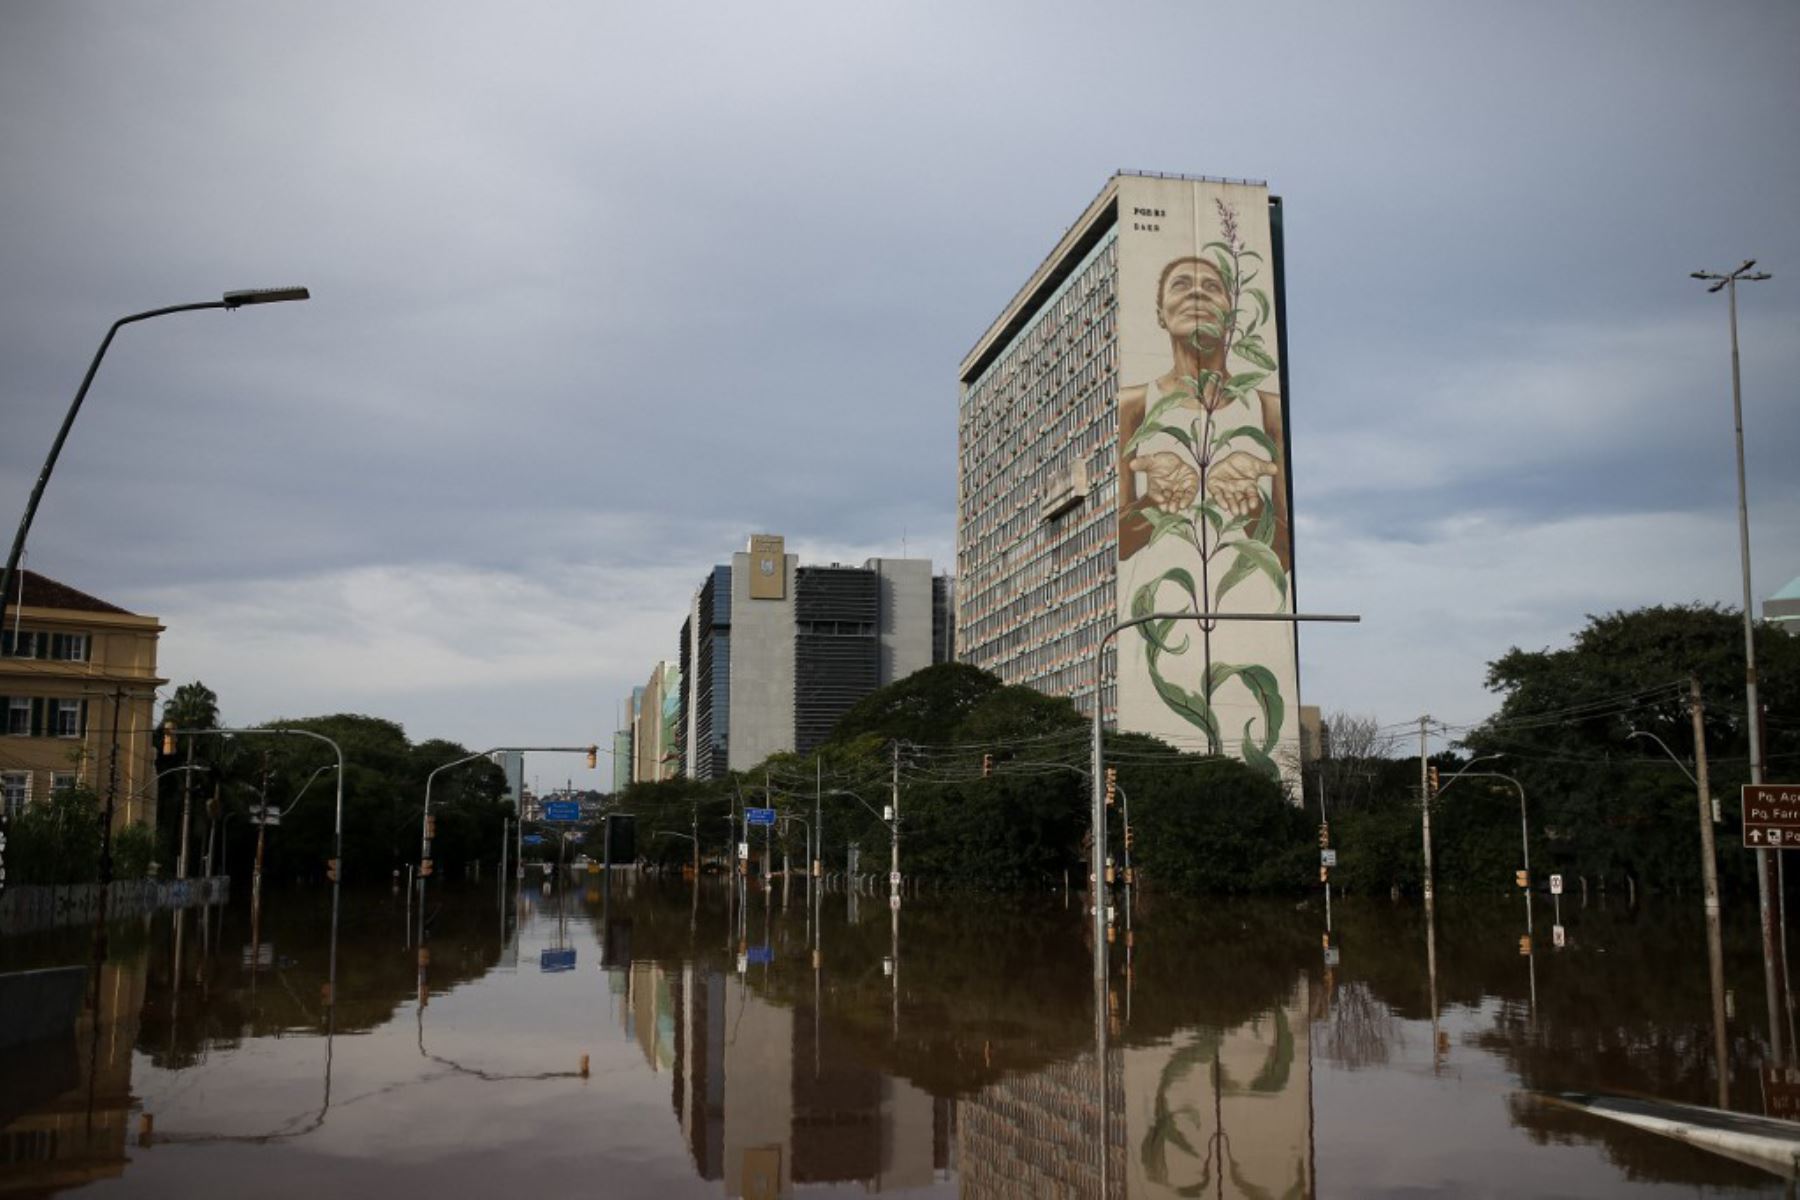 Según Defensa Civil, al menos 100 personas fallecieron, 372 resultaron heridas y 128 están desaparecidas en las inundaciones provocadas por desbordes de ríos tras las lluvias torrenciales de la última semana en el estado do Rio Grande do Sul. Foto: AFP